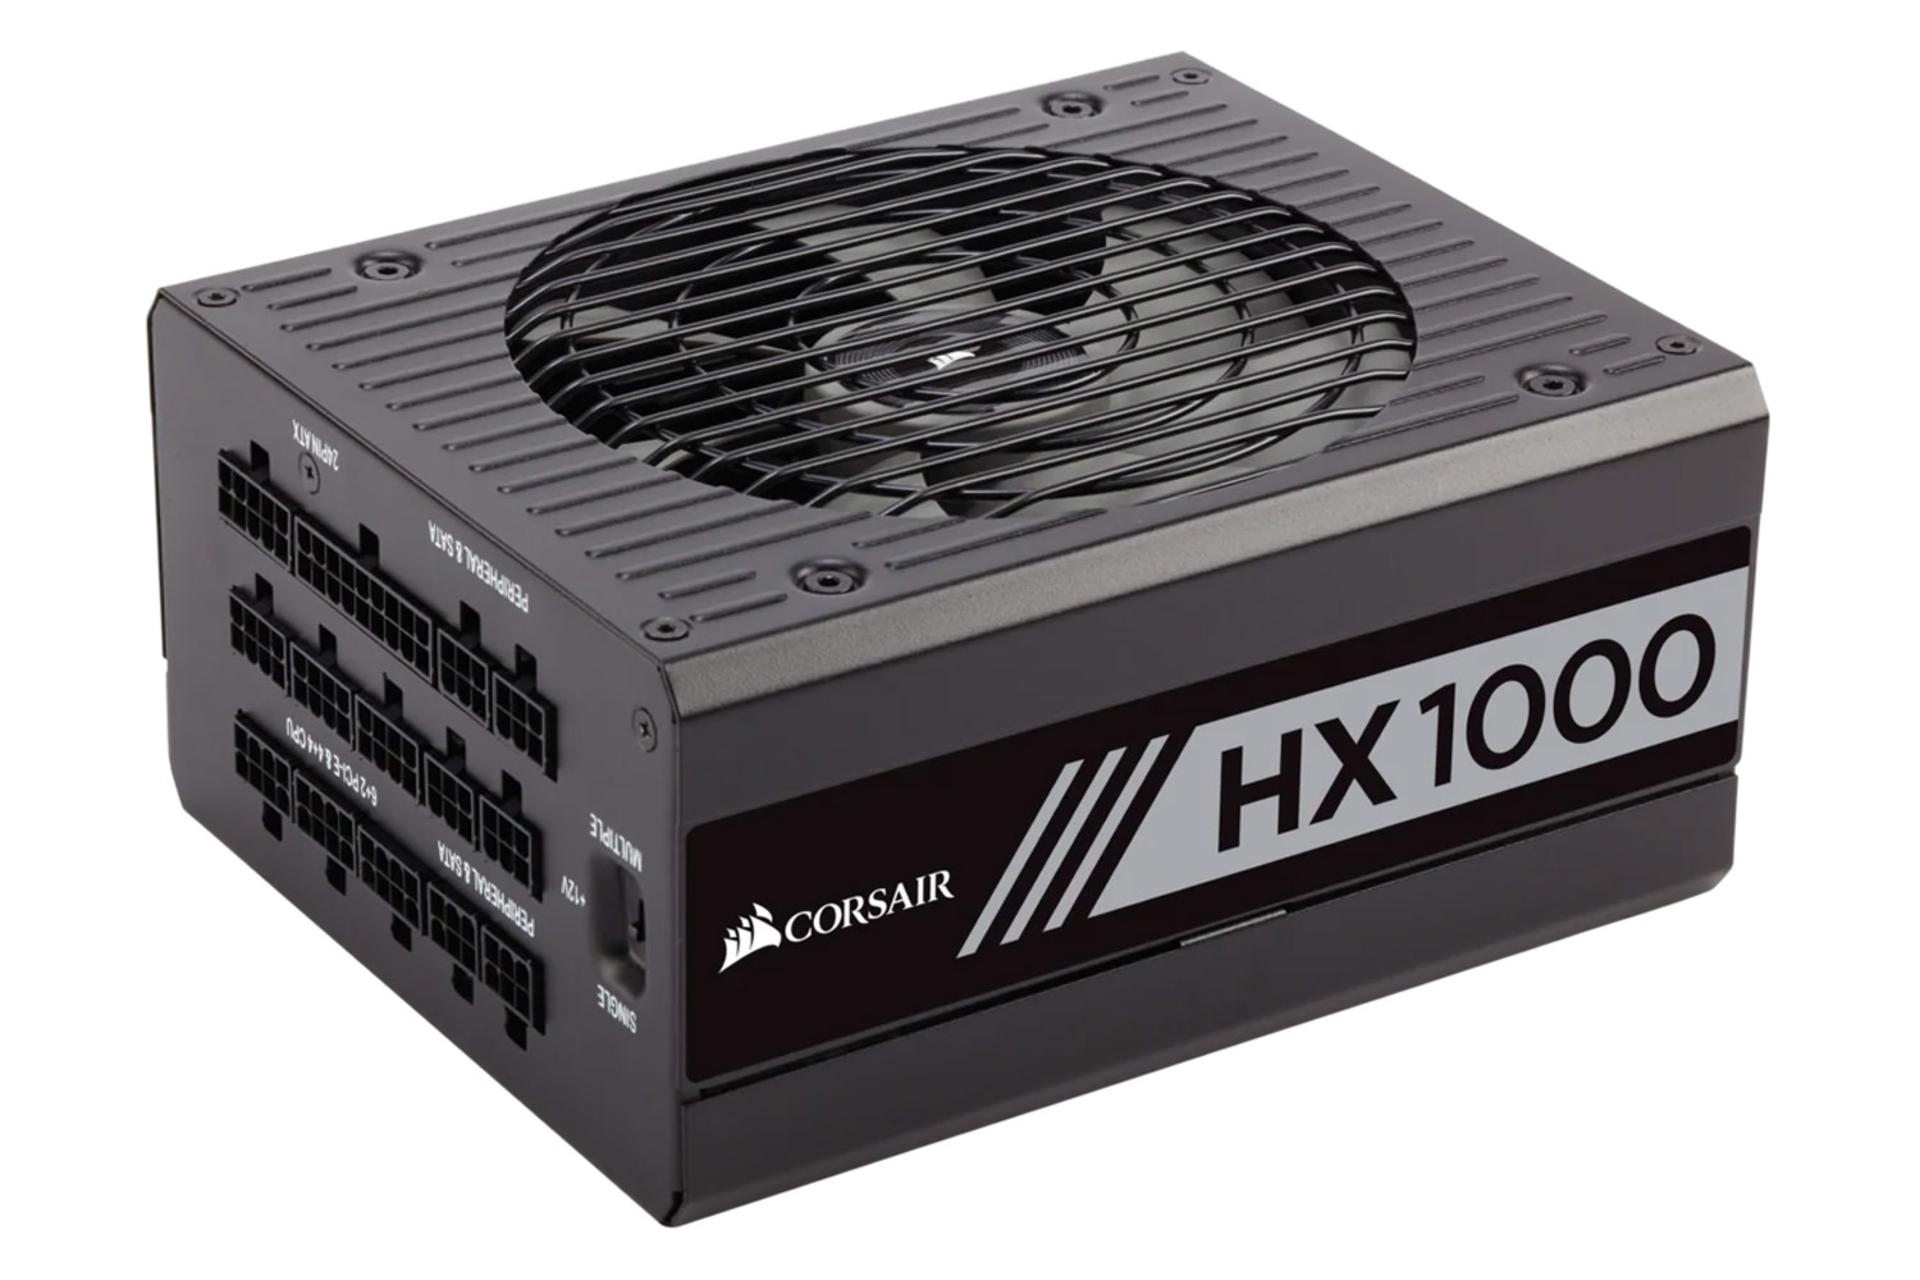 پاور کامپیوتر کورسیر HX1000 Platinum با توان 1000 وات